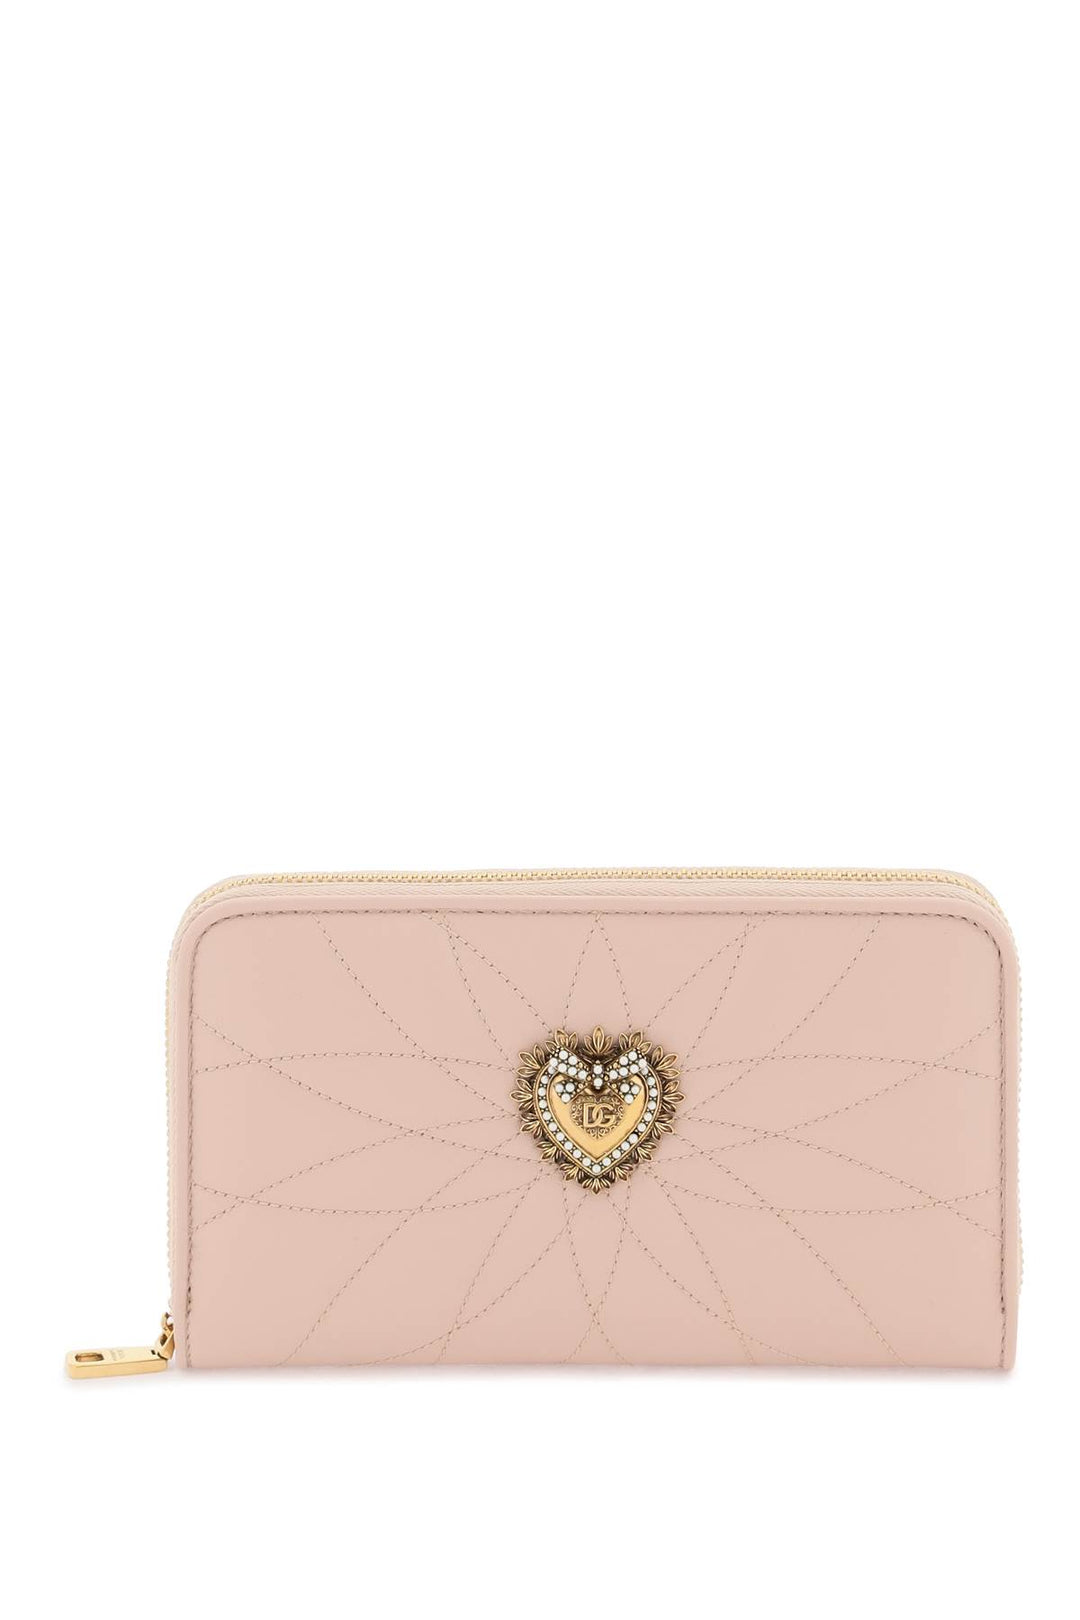 Dolce & Gabbana Devotion Zip Around Wallet   Rosa